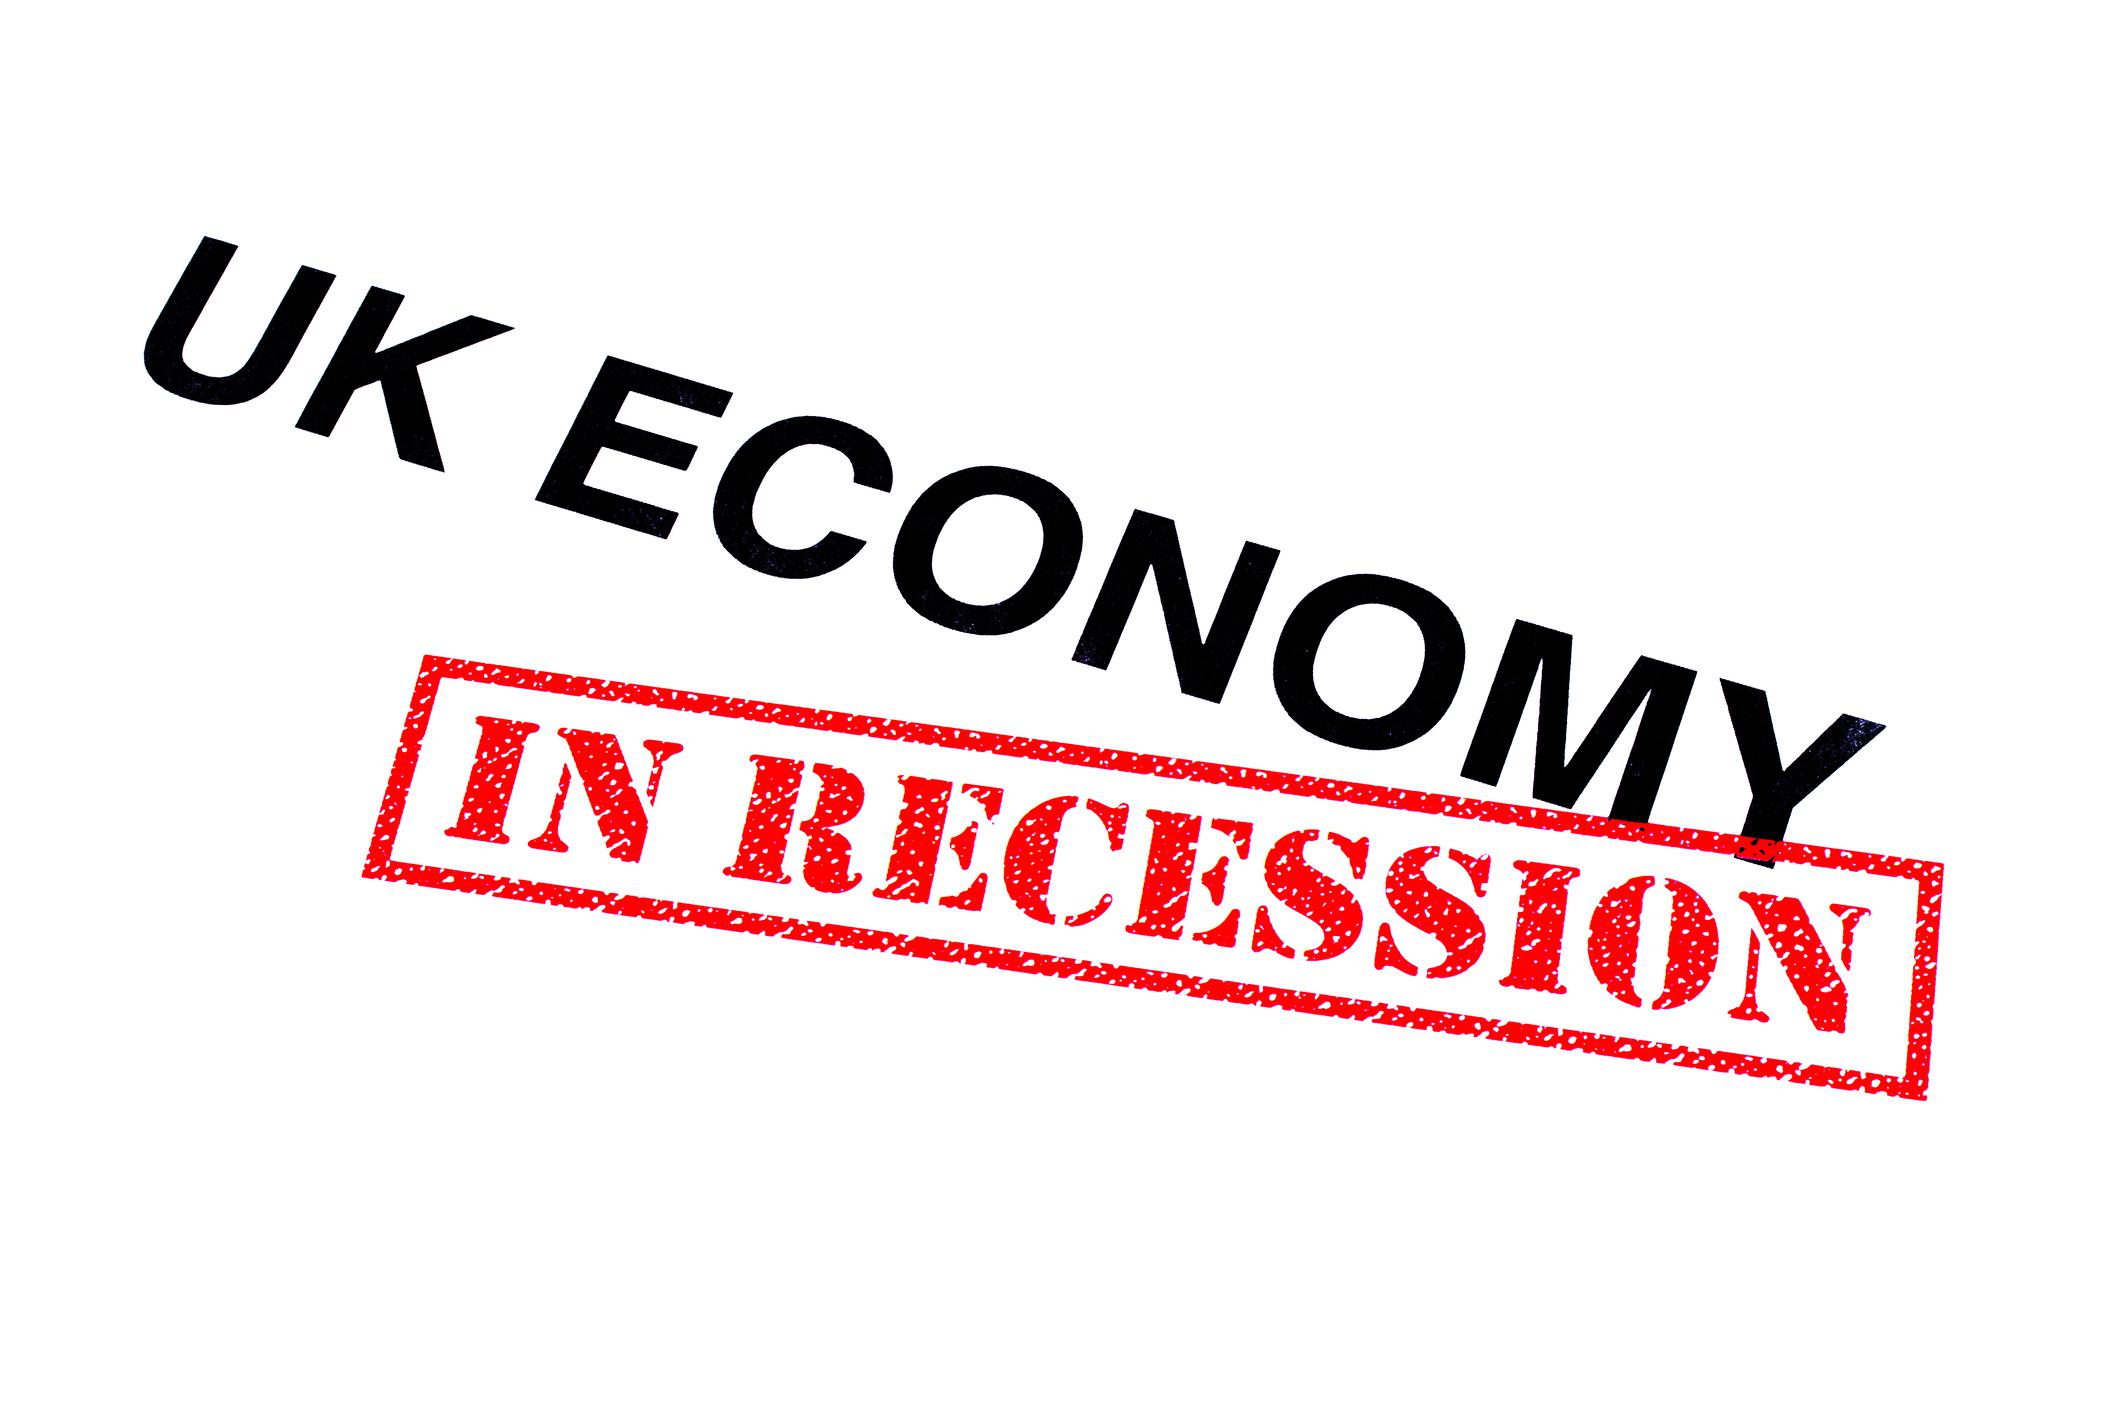 UK Recession